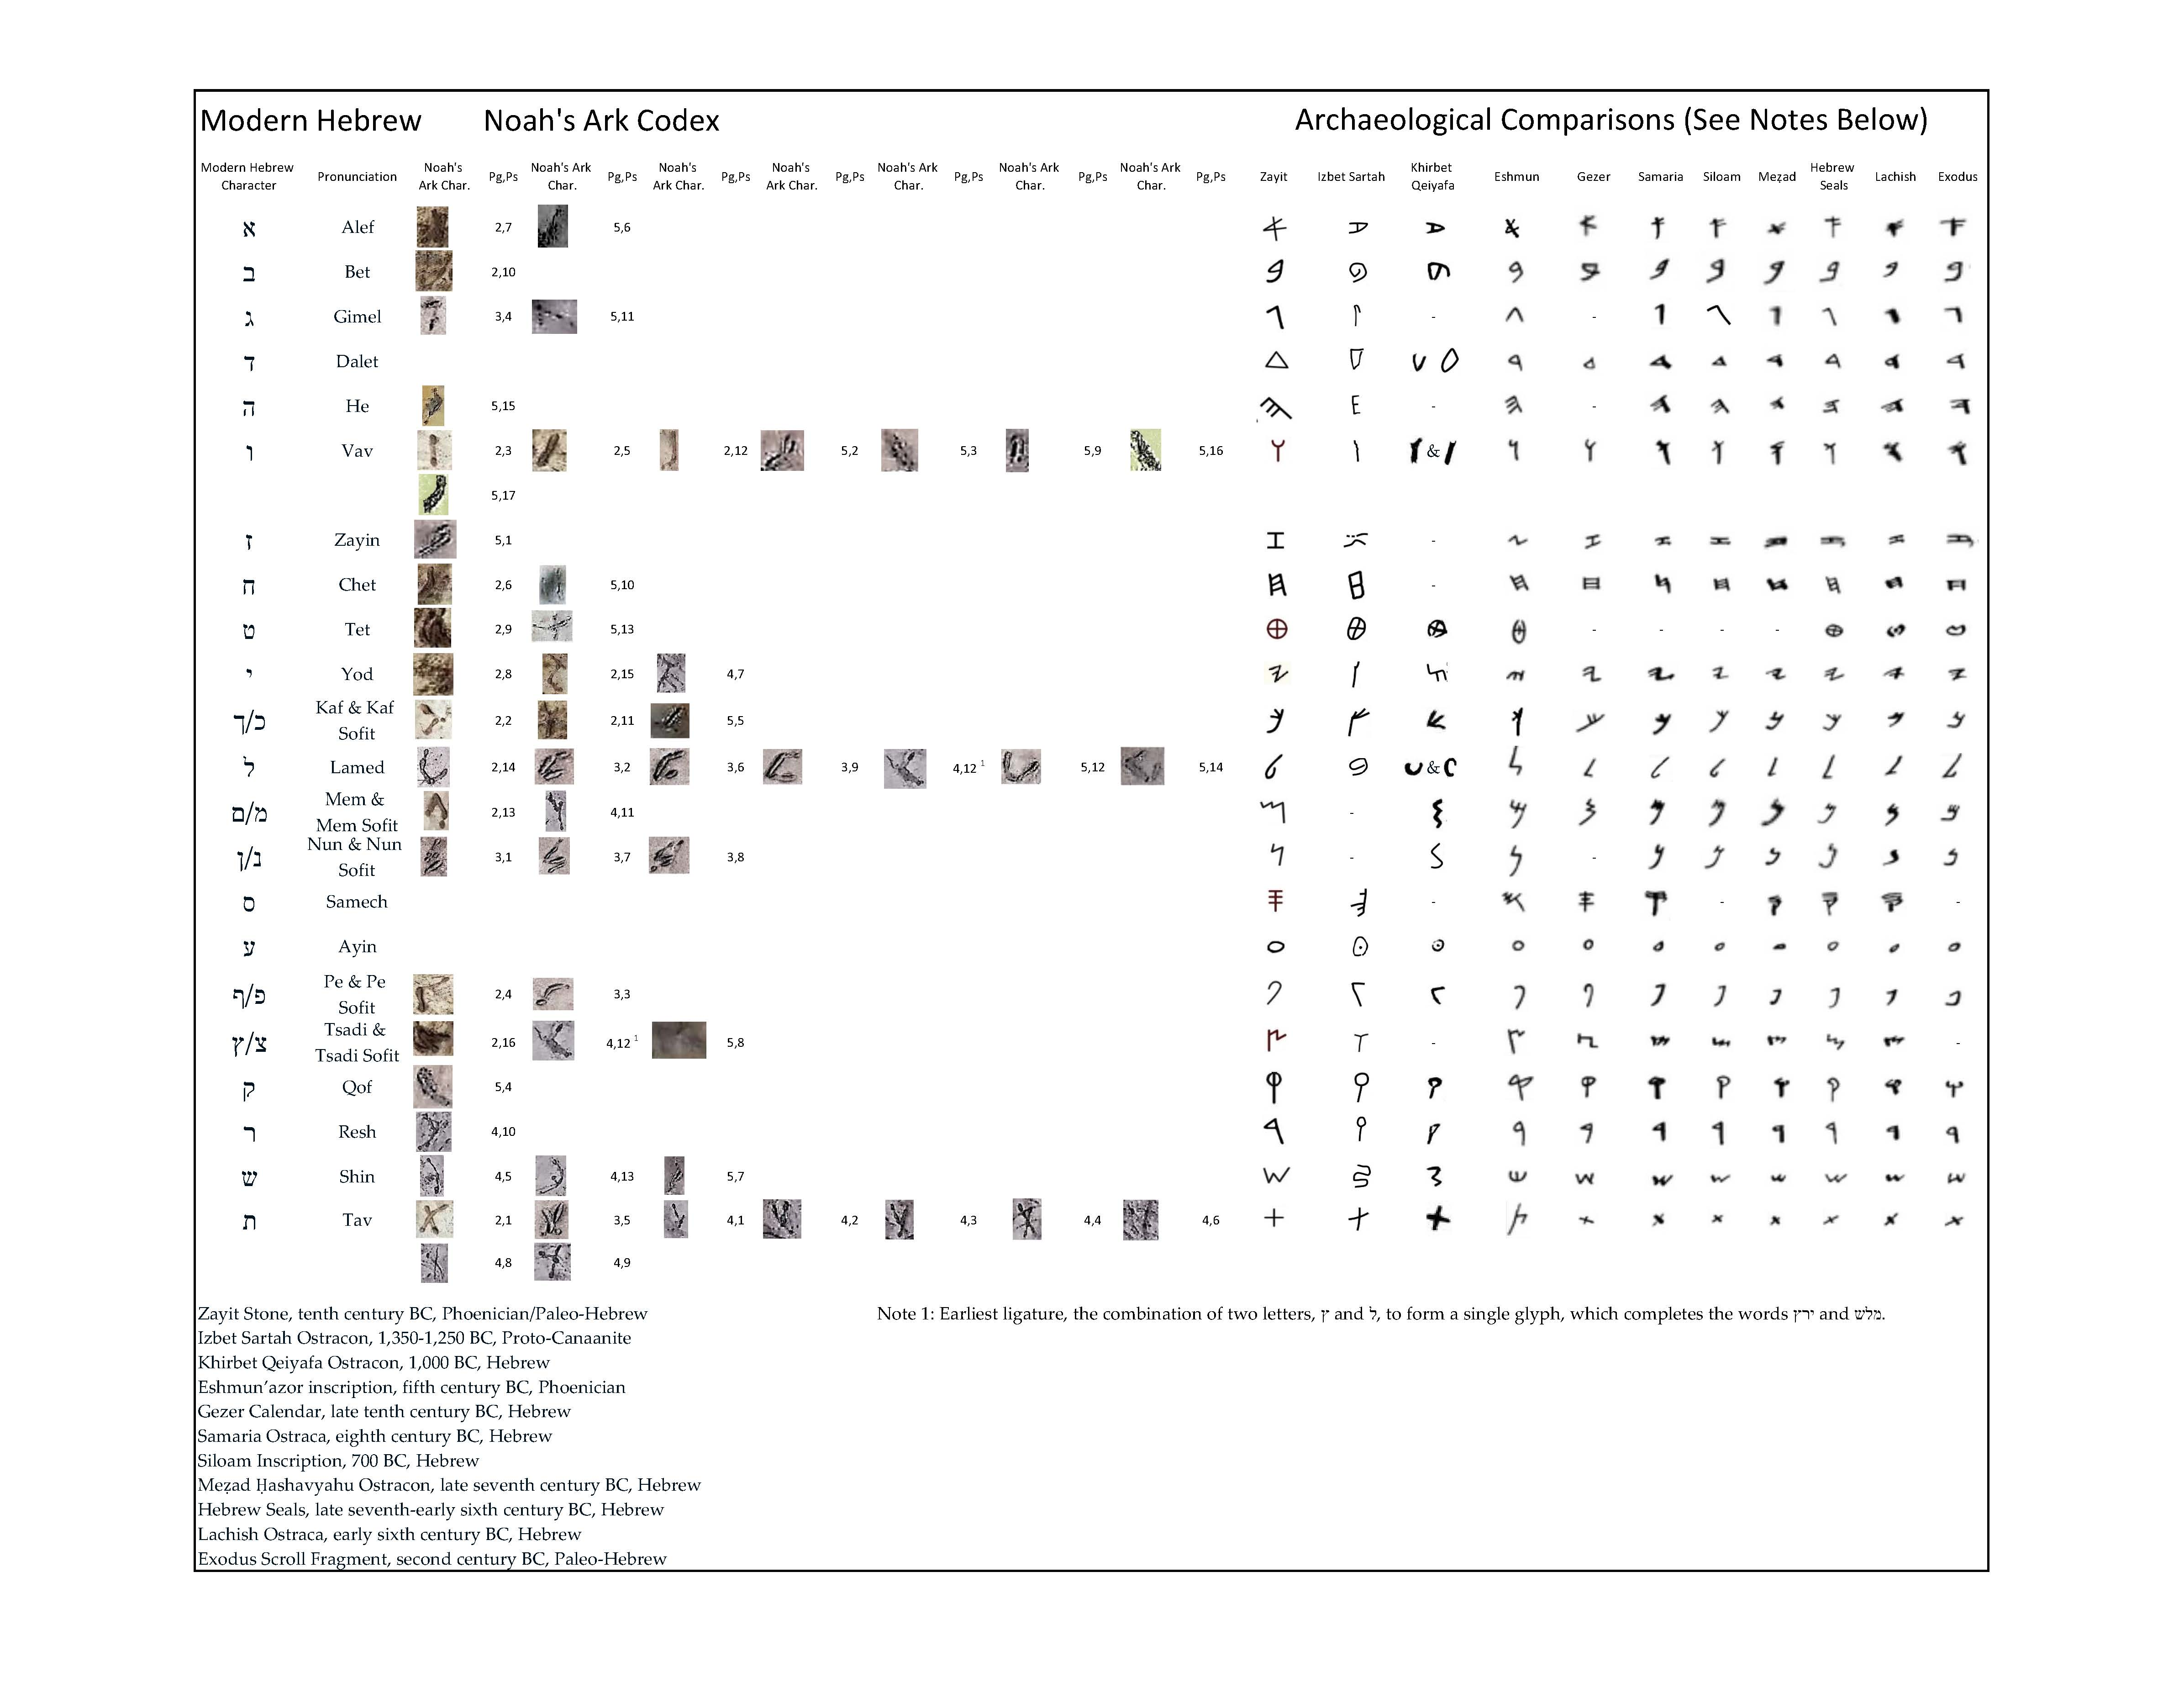 Dr. Joel Klenck: Noah's Ark Codex & Levantine Comparisons'